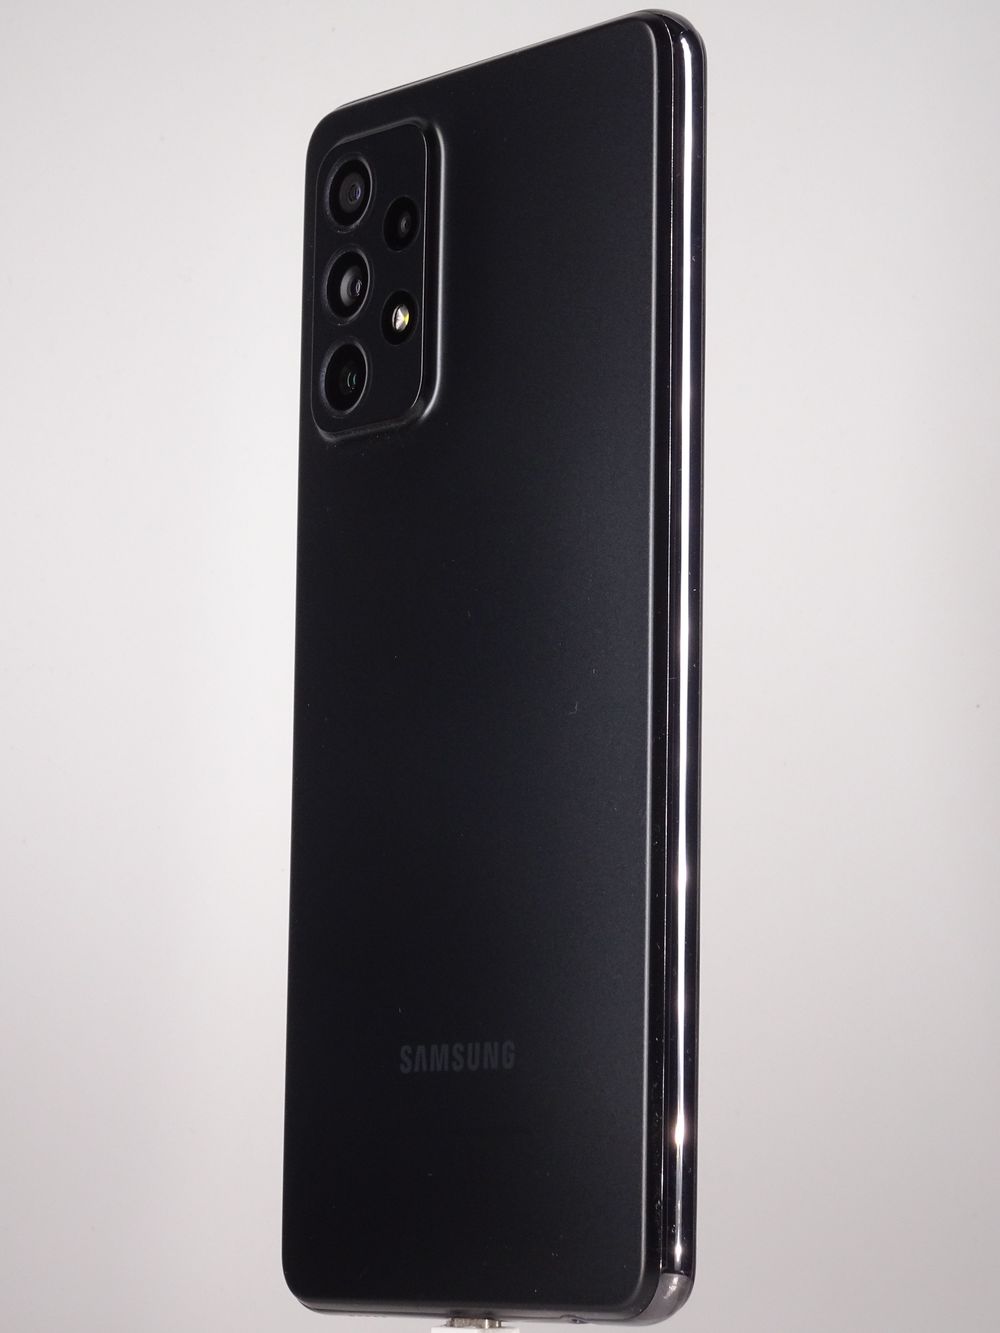 Мобилен телефон Samsung, Galaxy A72, 128 GB, Black,  Като нов